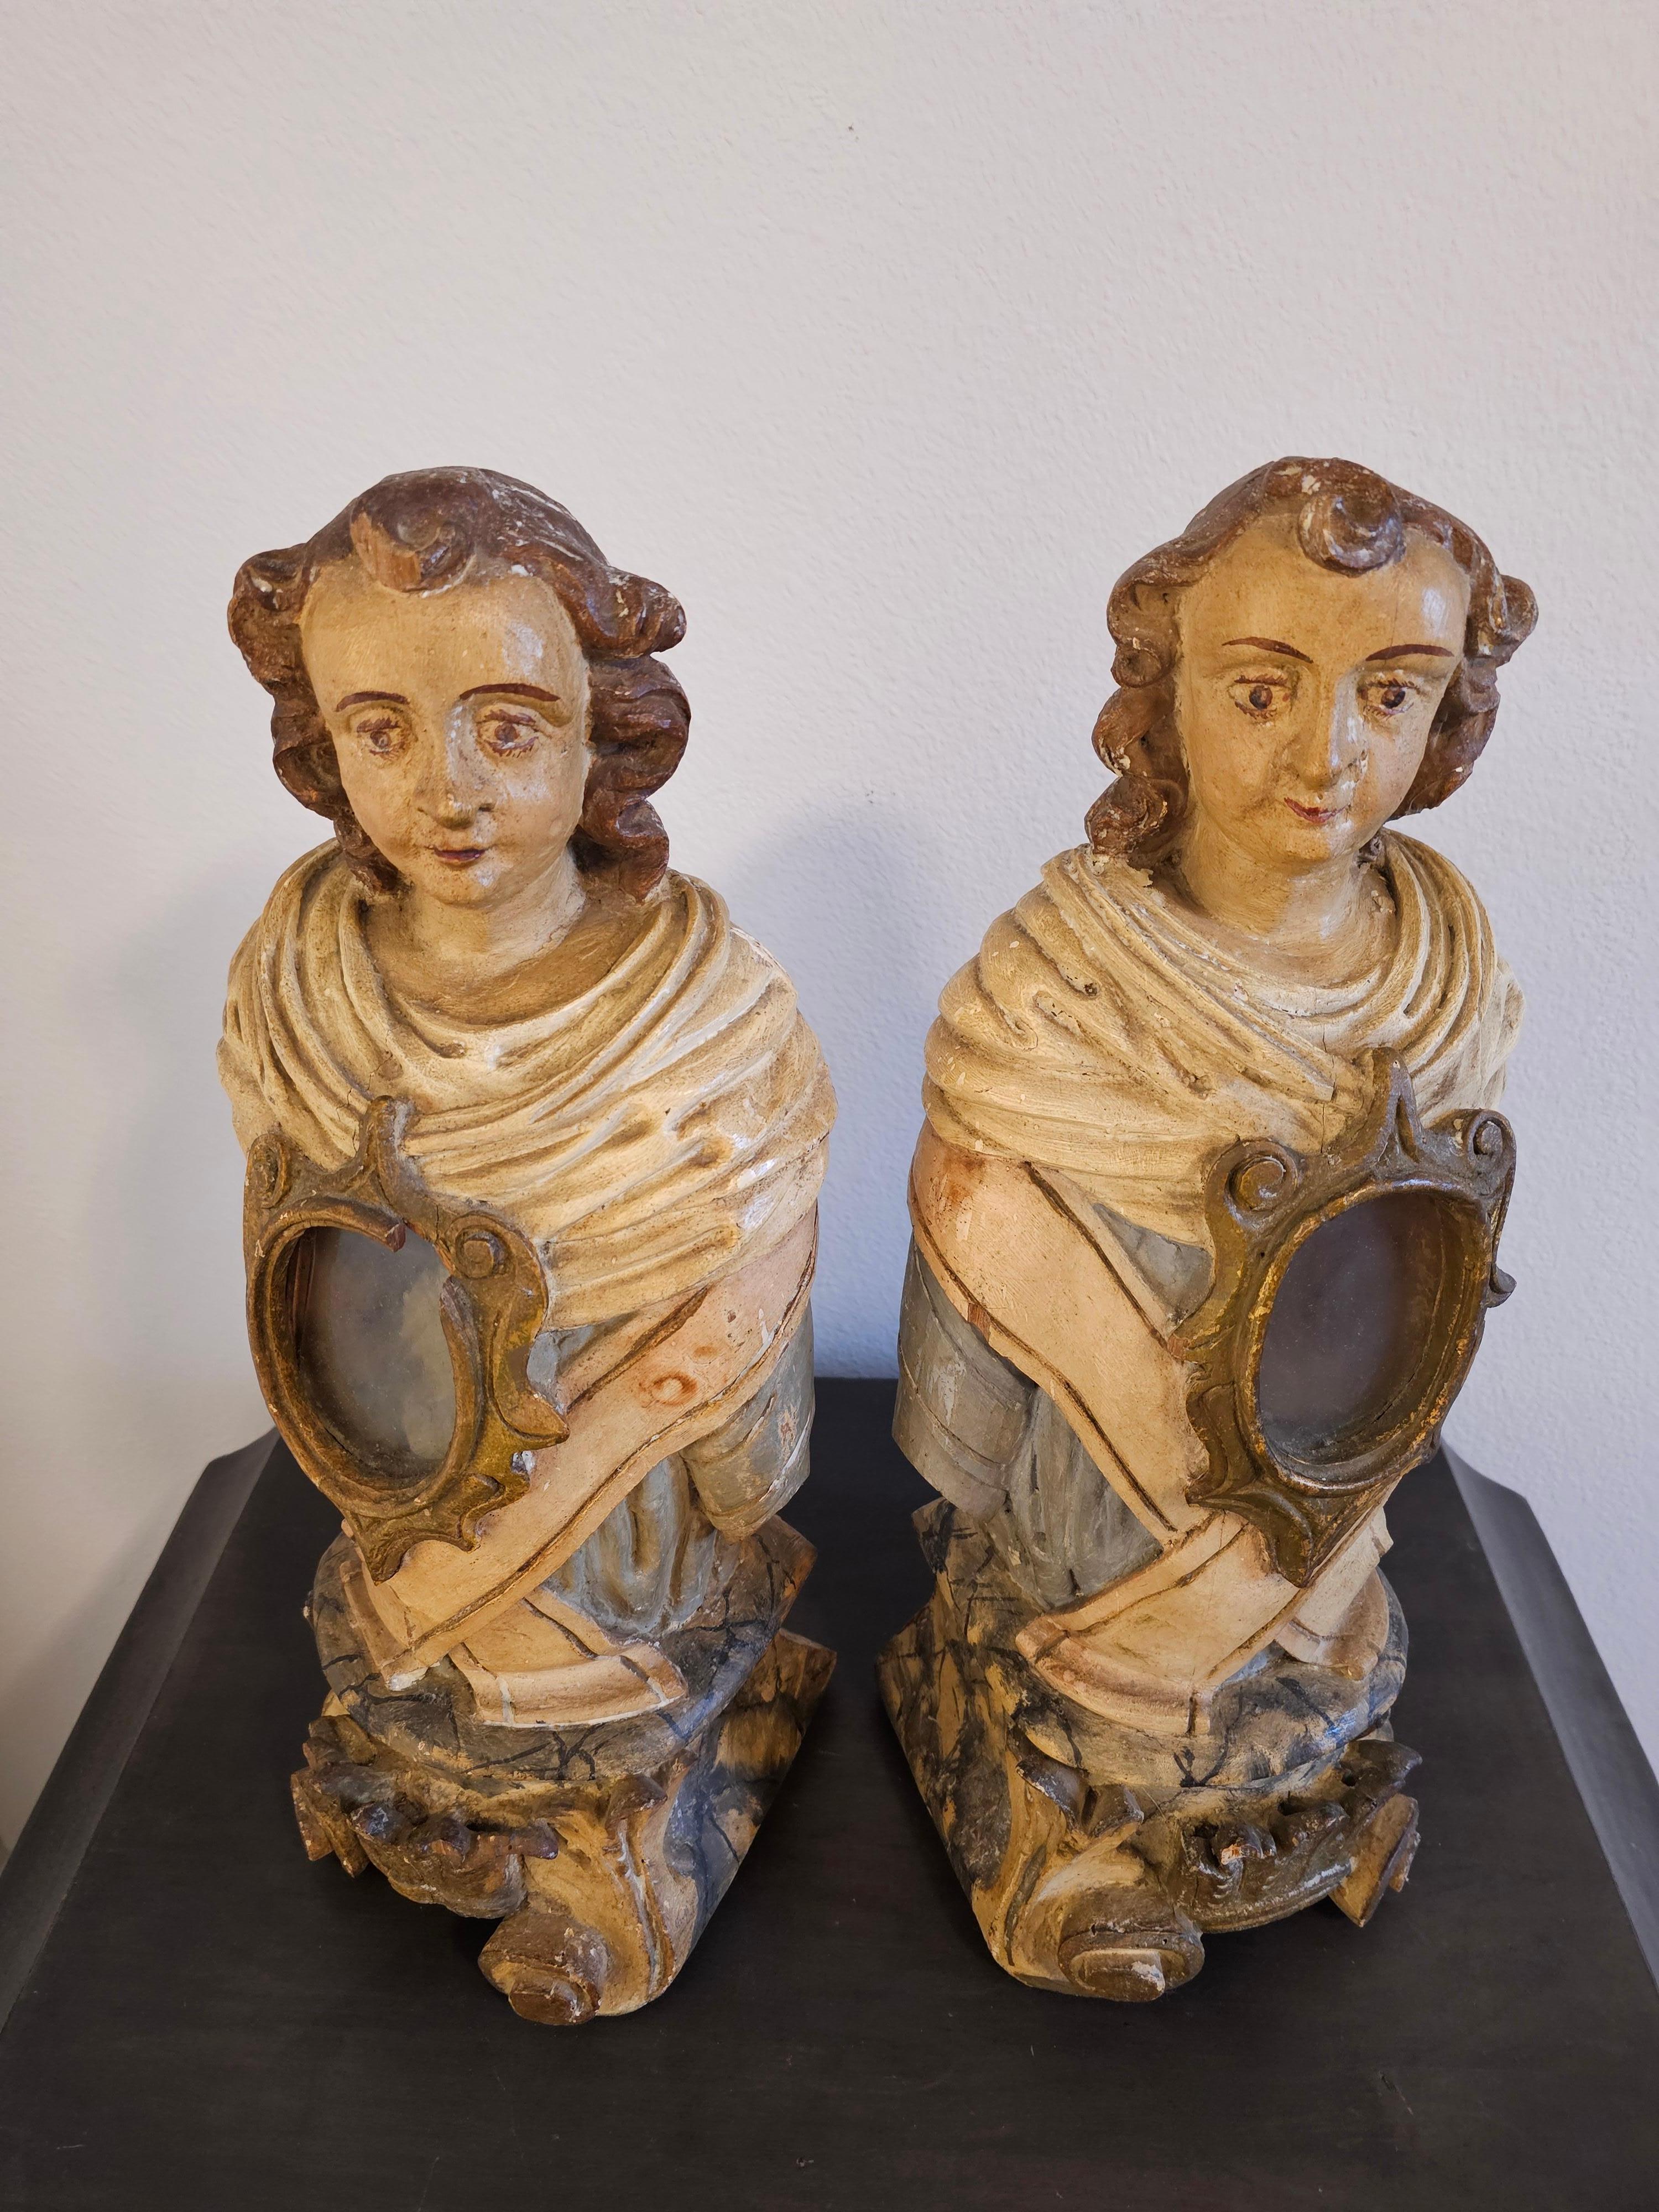 Remarquable paire de bustes reliquaires d'autel d'église en bois sculpté et peint d'époque baroque italienne.

Née en Italie au XVIIIe siècle/peut-être à la fin du XVIIe siècle, de forme figurative, chacune sculptée à la main dans un seul rondin,